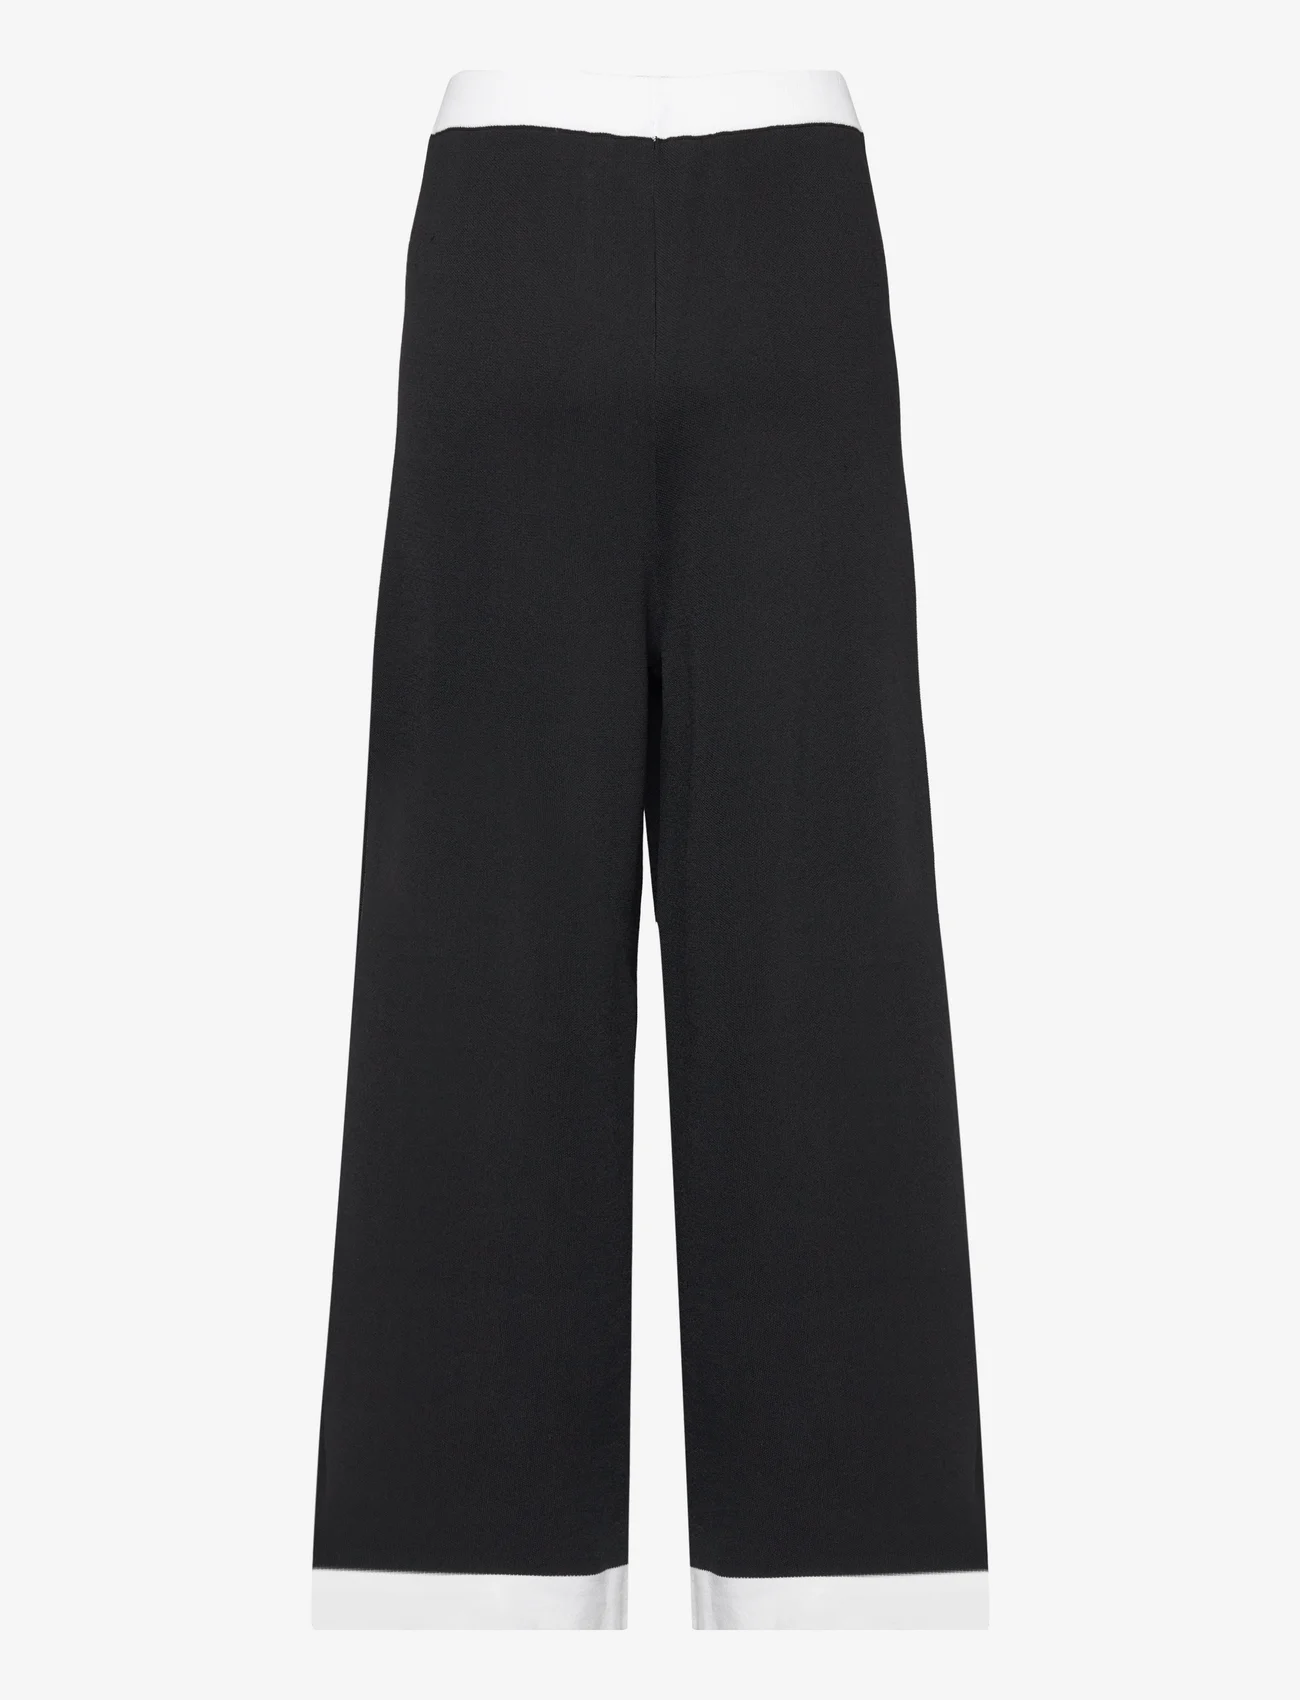 Karl Lagerfeld - classic knit pants - vide bukser - black/white - 1